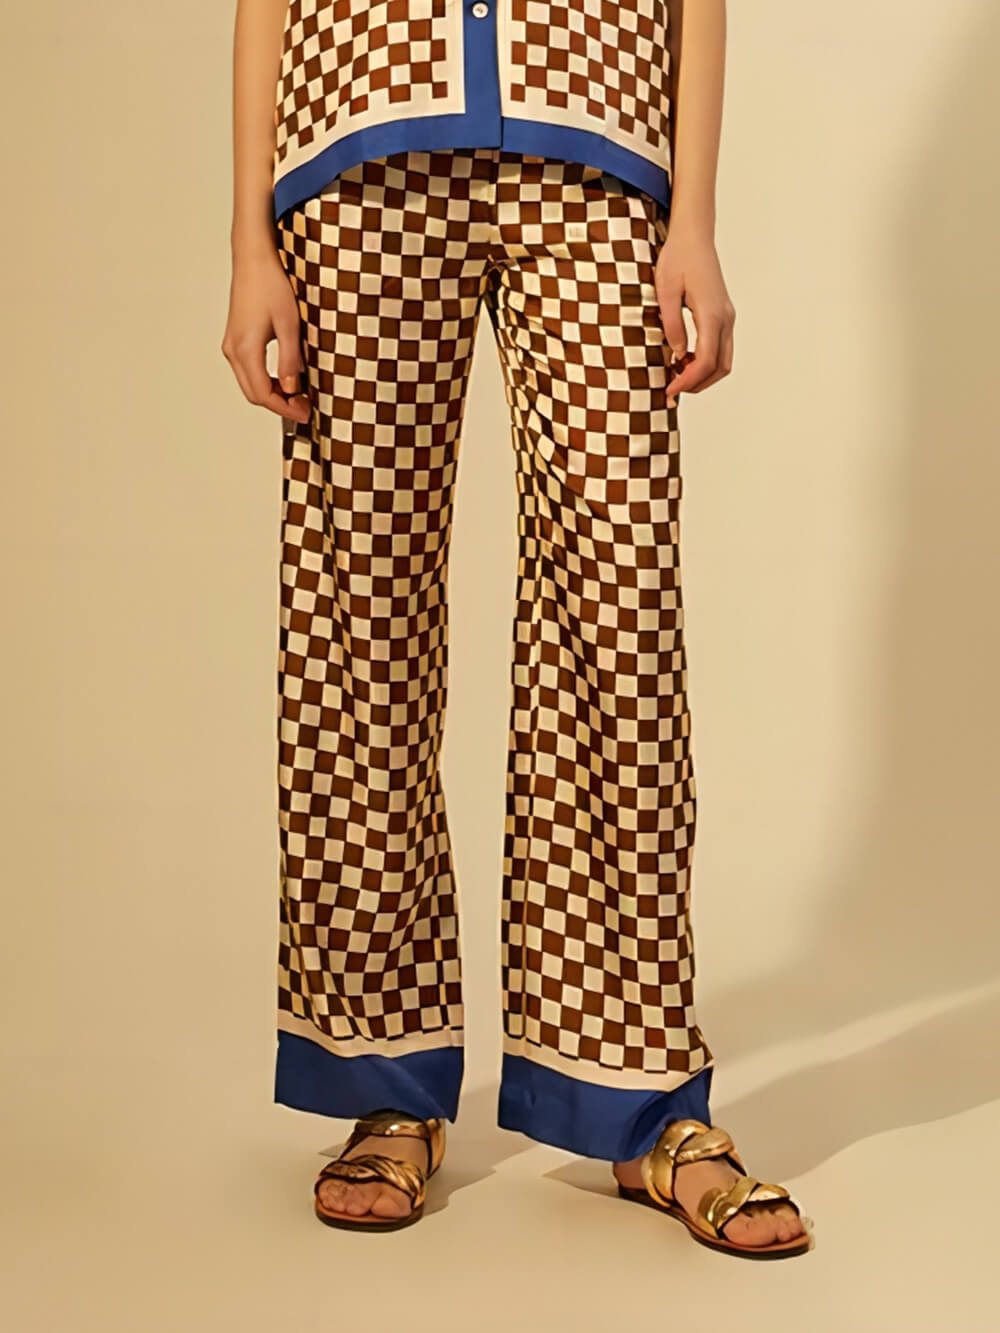 Unieke losse broekset met schaakbordprint, blauwe strepen en patchwork